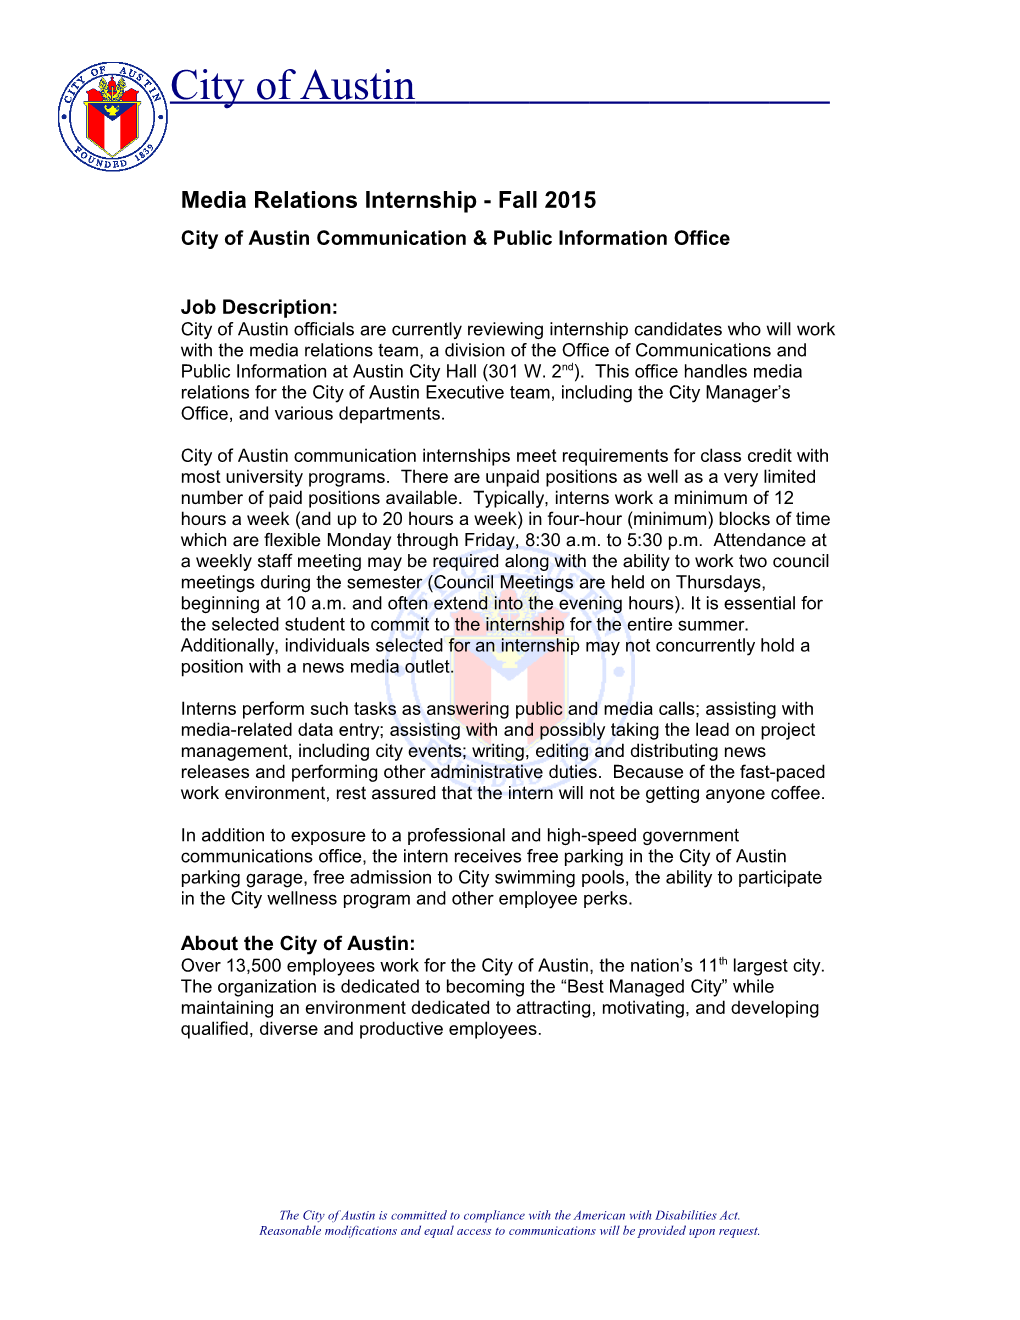 Media Relations Internship-Fall 2015